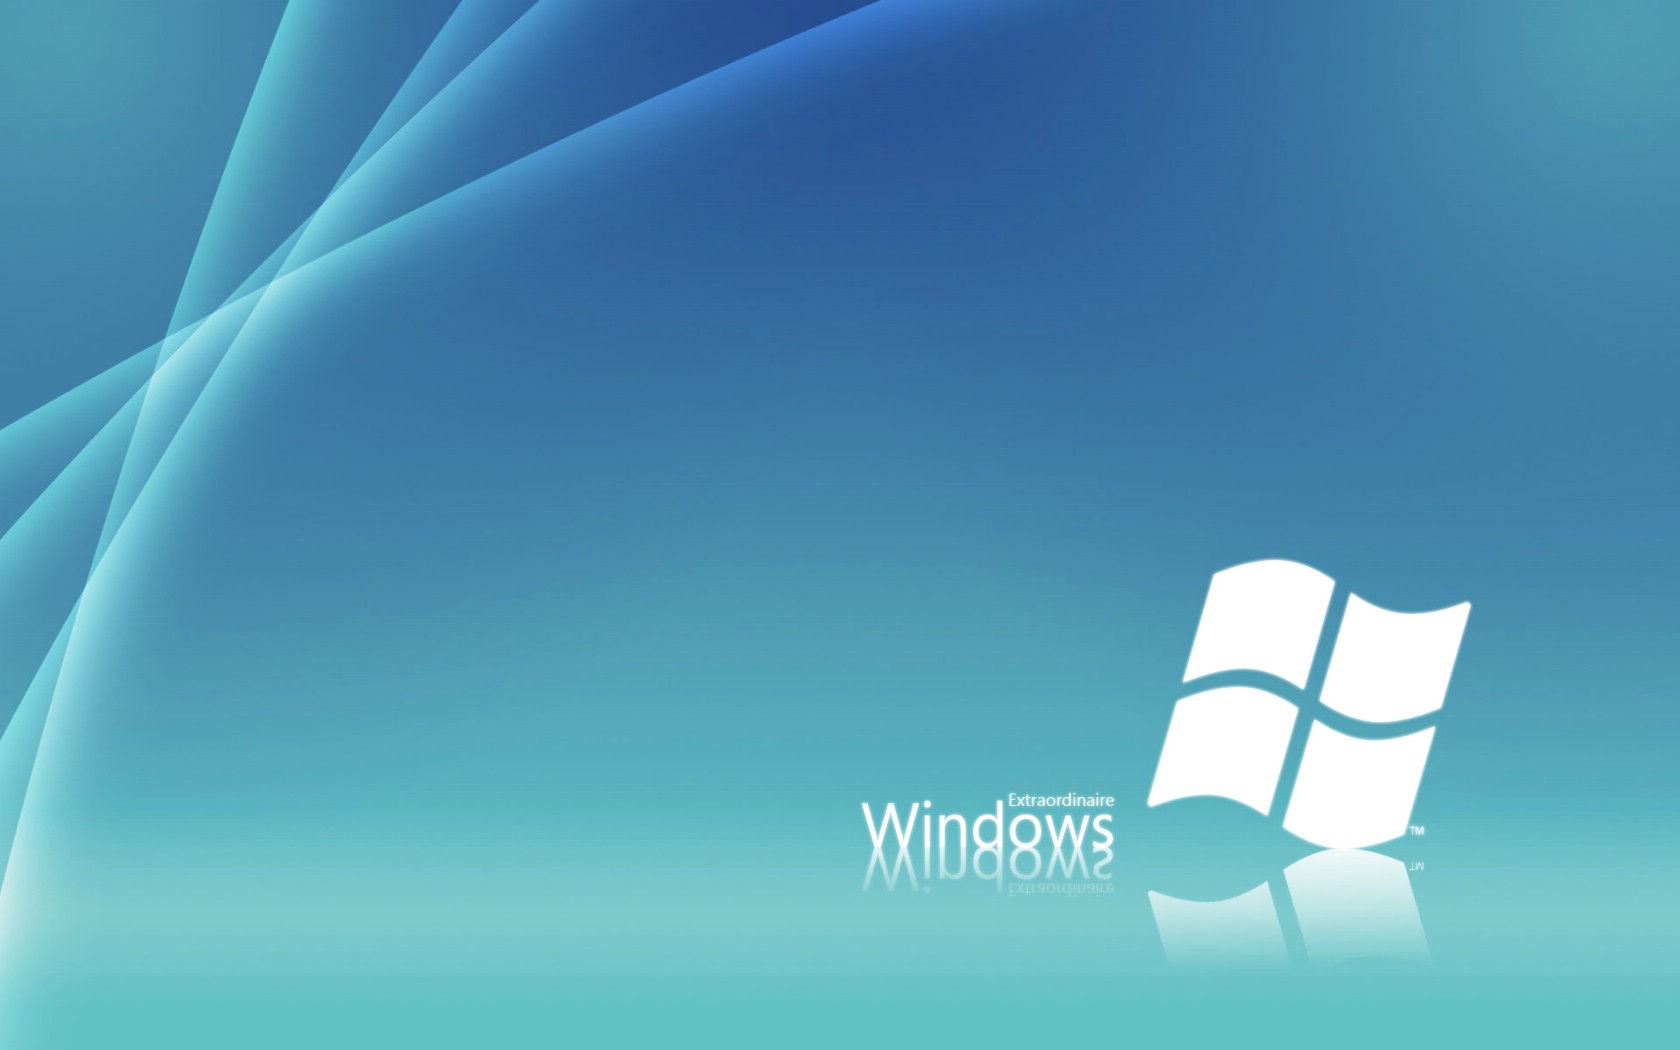 壁纸1680x1050Windows7 6 3壁纸 Windows7壁纸 Windows7图片 Windows7素材 系统壁纸 系统图库 系统图片素材桌面壁纸